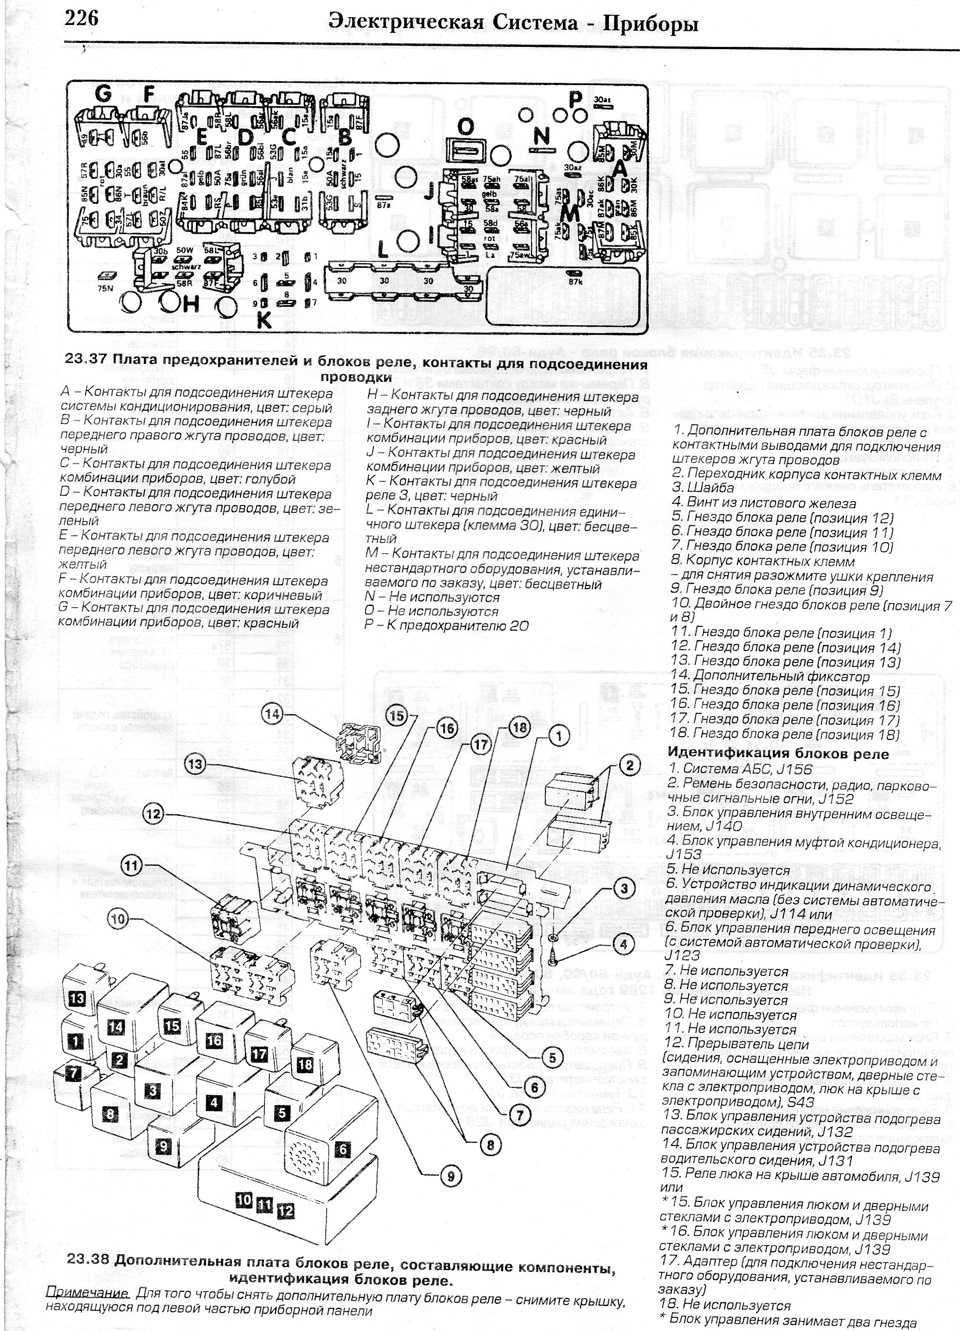 Audi a3: инструкция по эксплуатации автомобиля audi a3